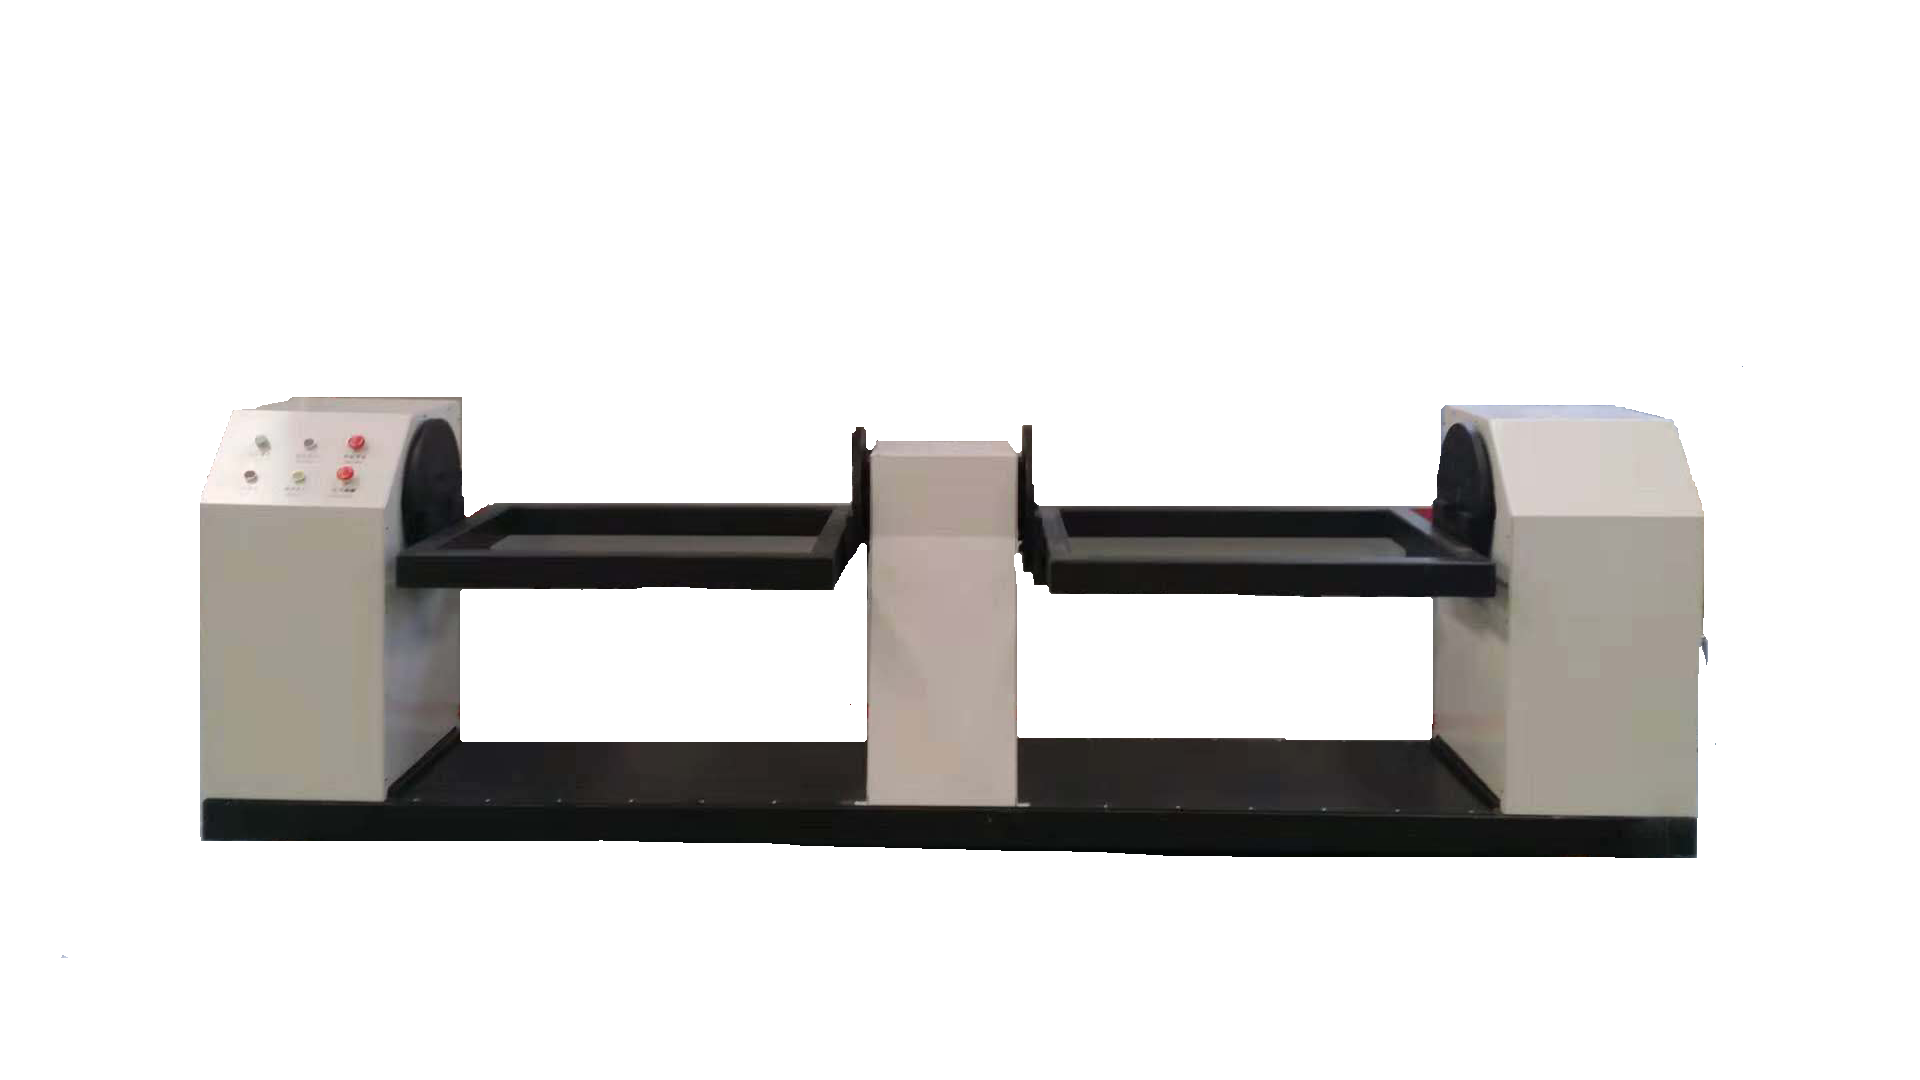 凯沃智造	机器人焊接防护门	焊接机器人界面	焊接机器人品牌排行	自动焊接设备